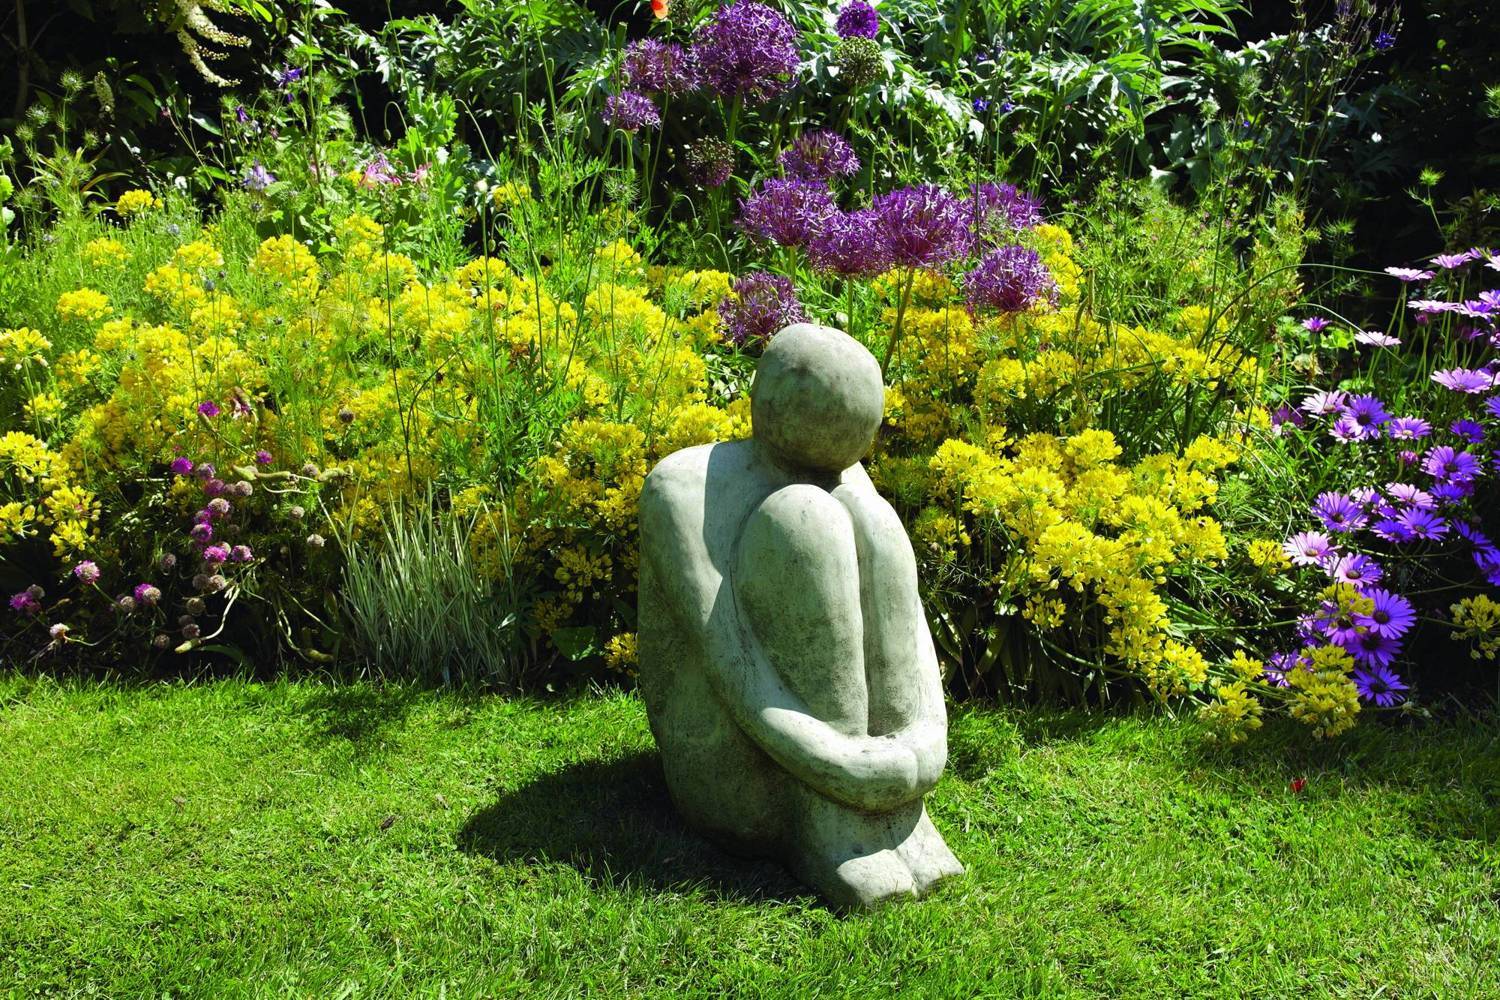 Medium Henry Contemporary Art Garden Statue